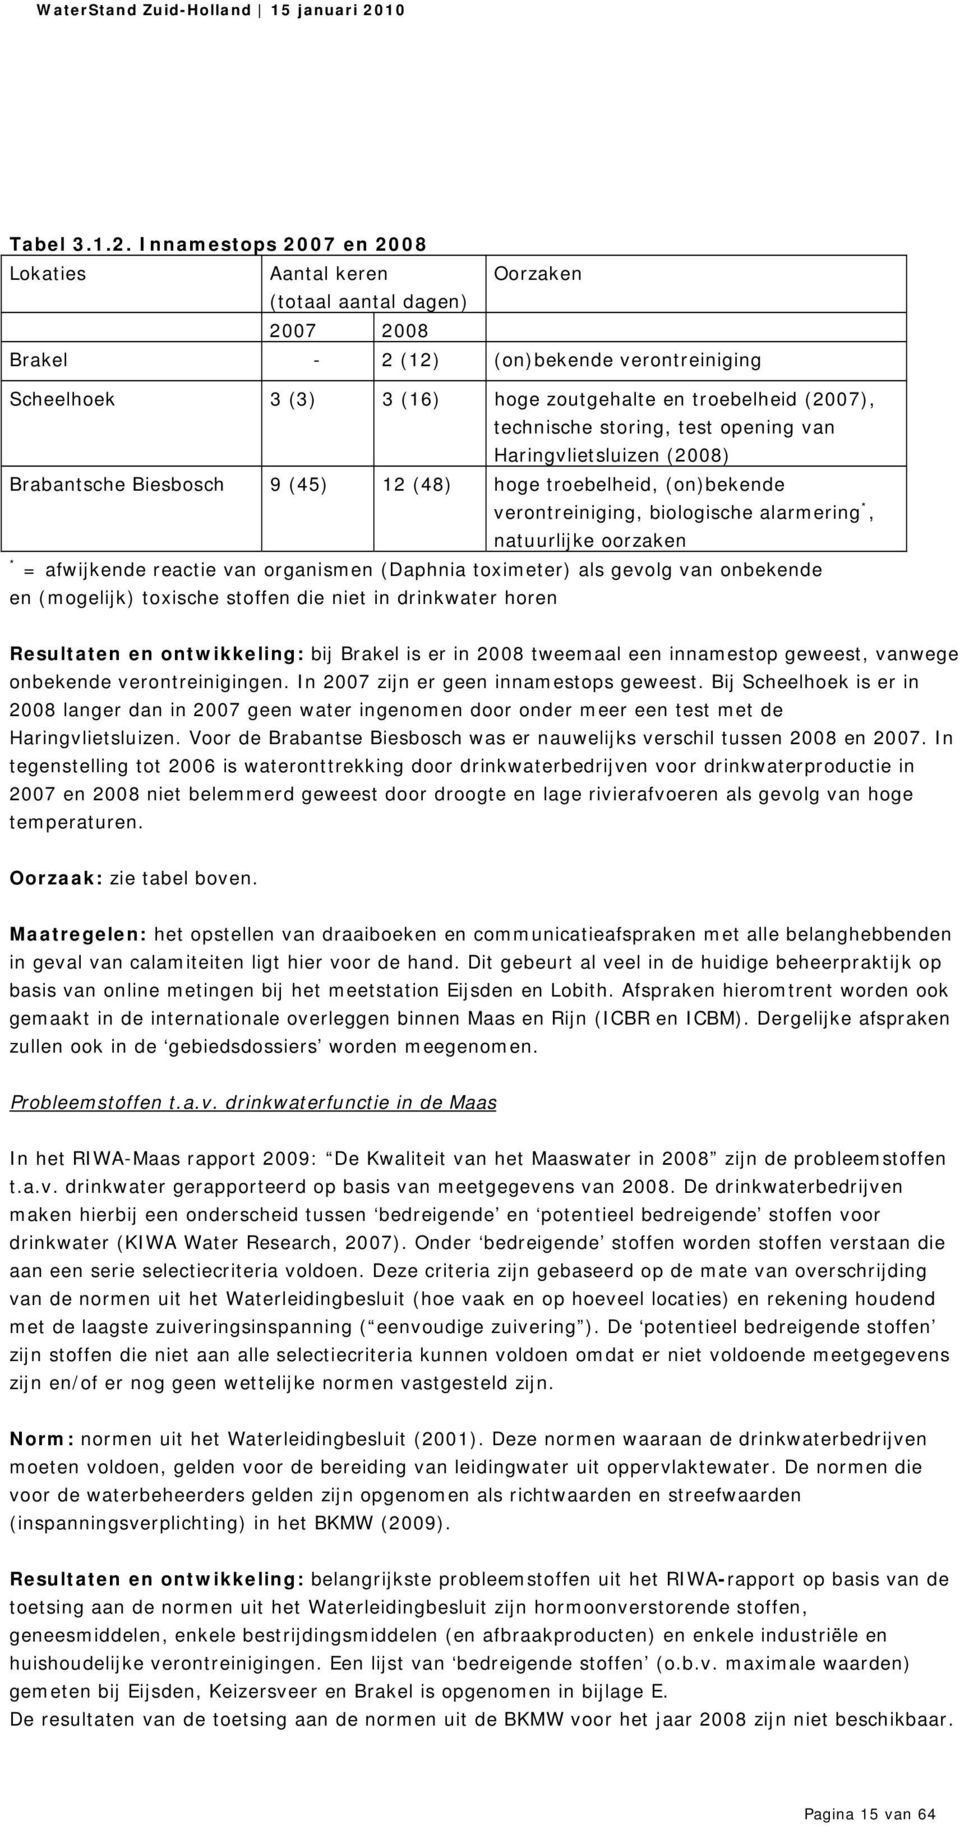 technische storing, test opening van Haringvlietsluizen (2008) Brabantsche Biesbosch 9 (45) 12 (48) hoge troebelheid, (on)bekende verontreiniging, biologische alarmering *, natuurlijke oorzaken * =